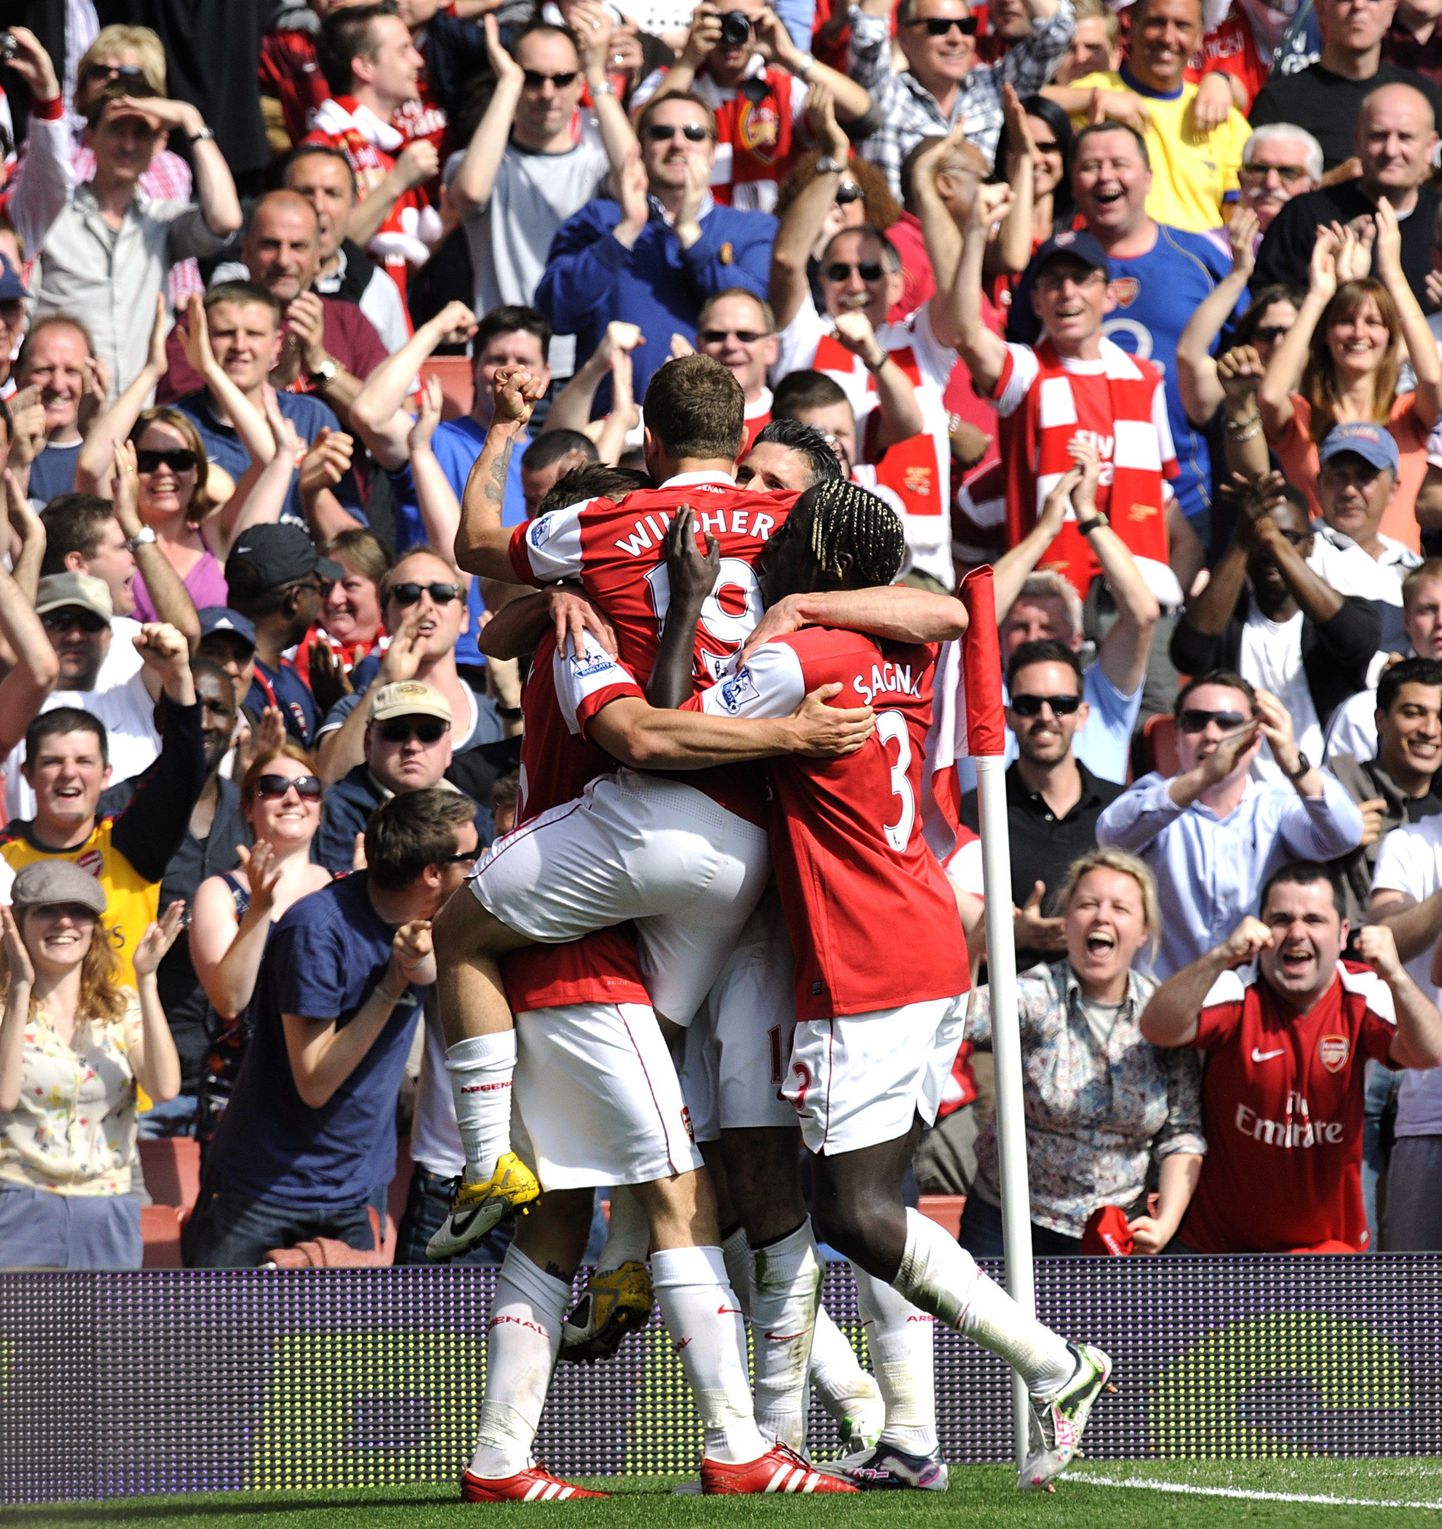 Arsenali mängijad väravat tähistamas.